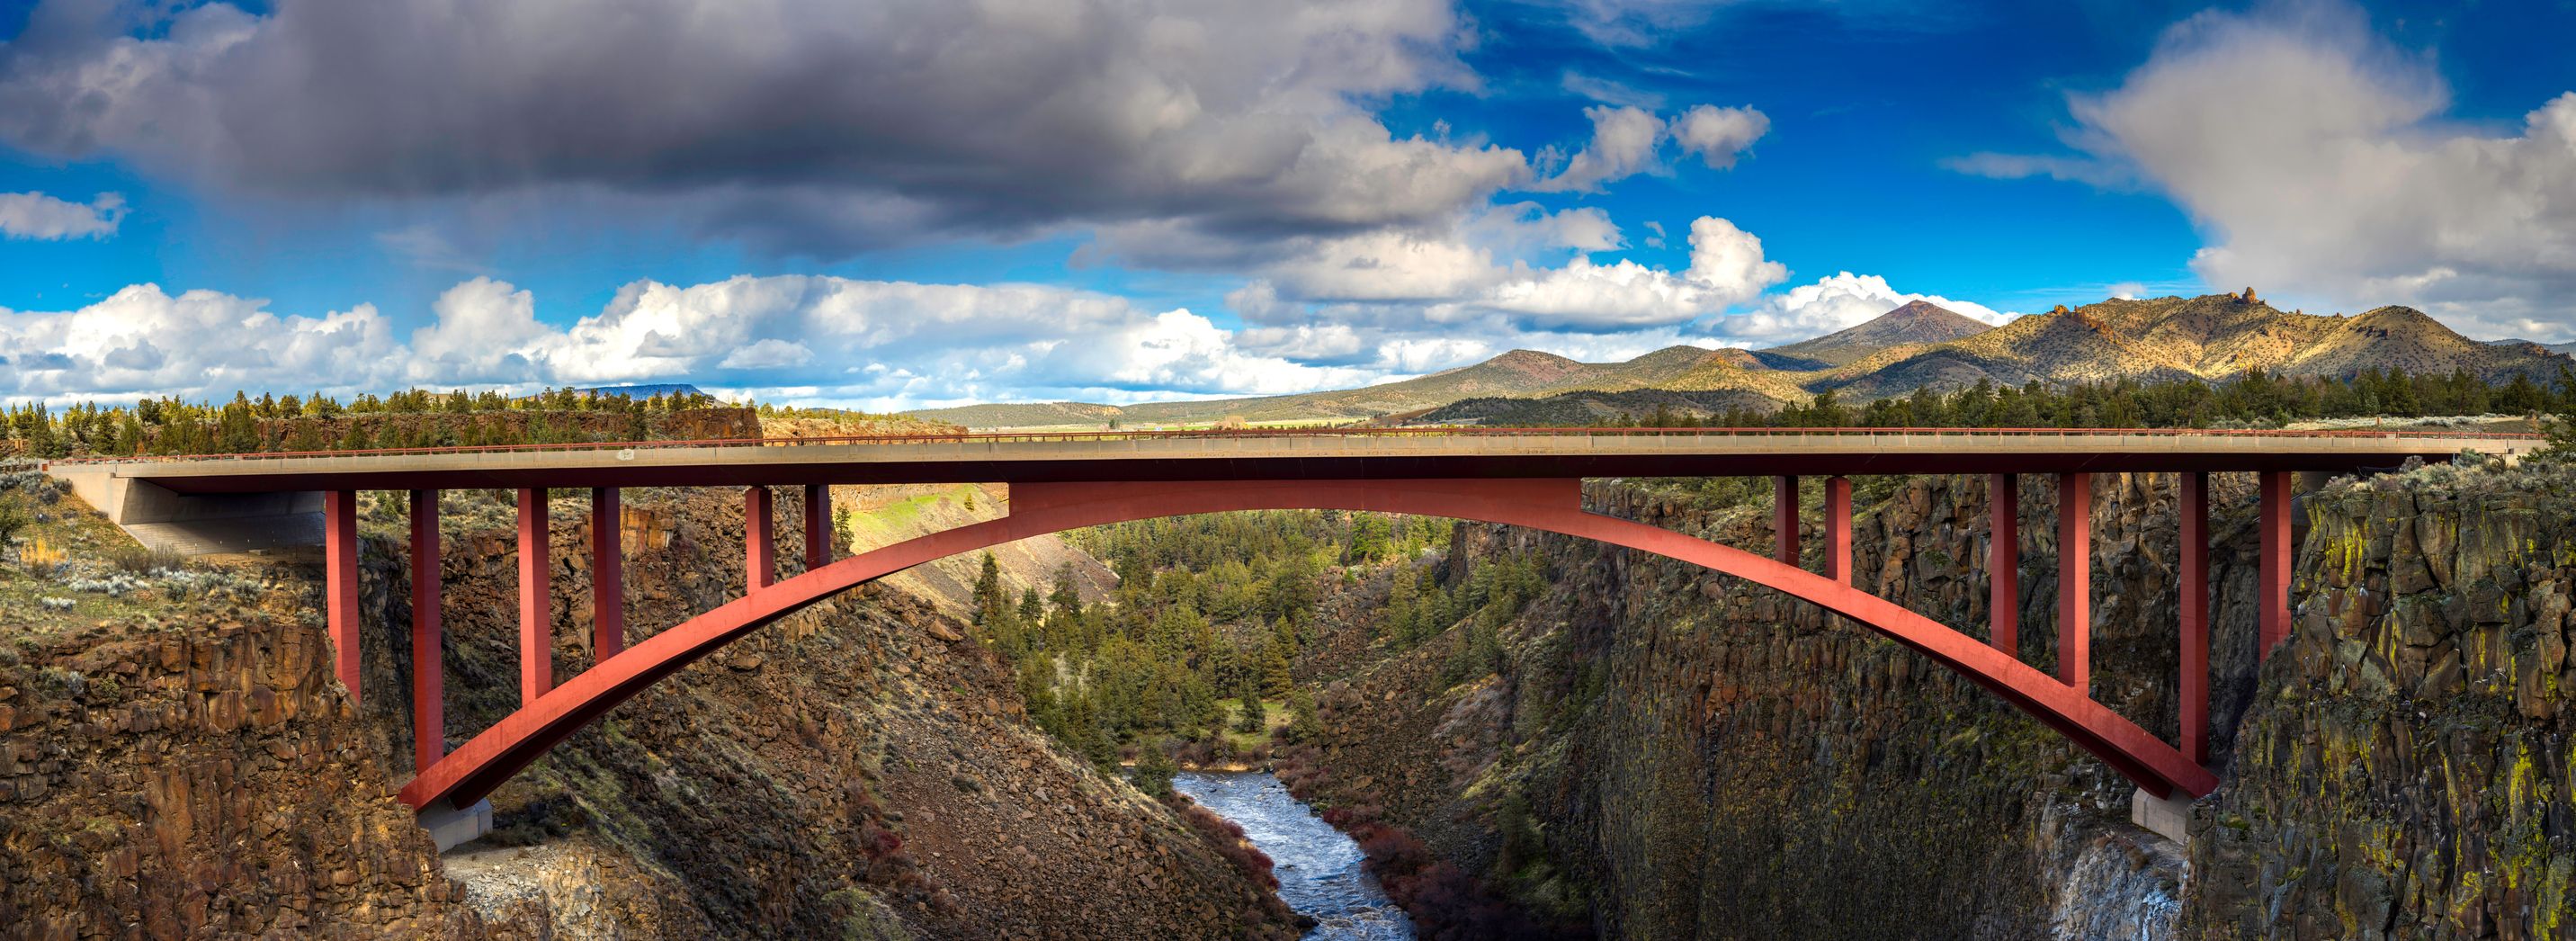 Bridge over a canyon